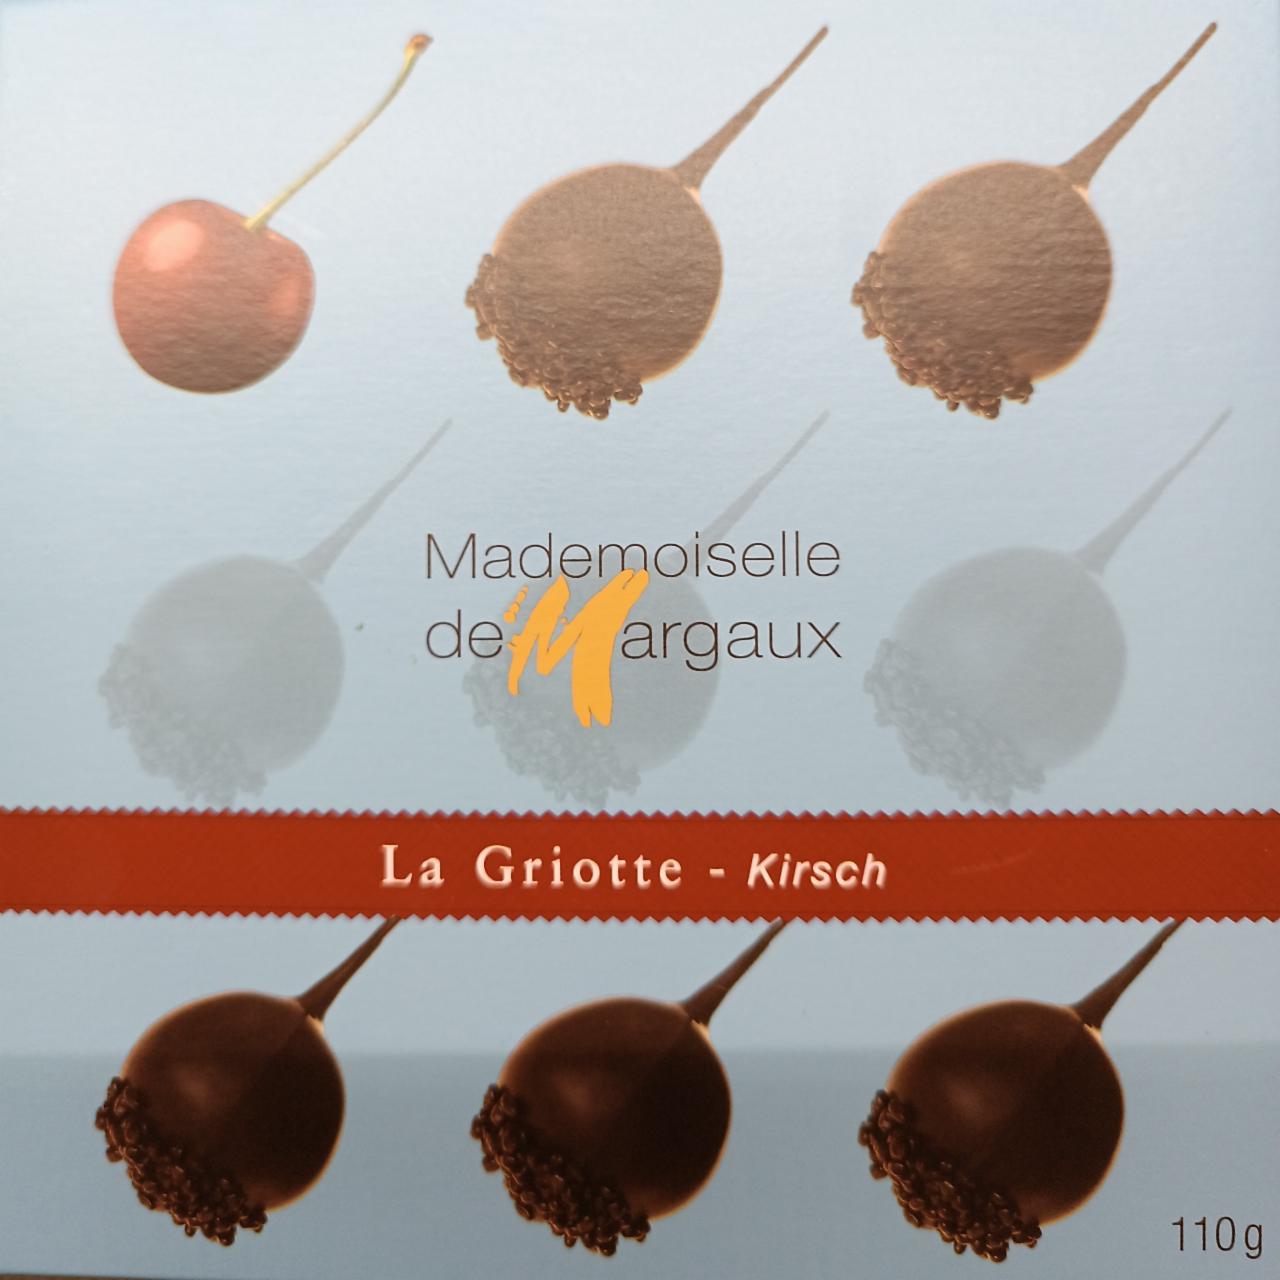 Fotografie - La Griotte - Kirsch Mademoiselle de Margaux